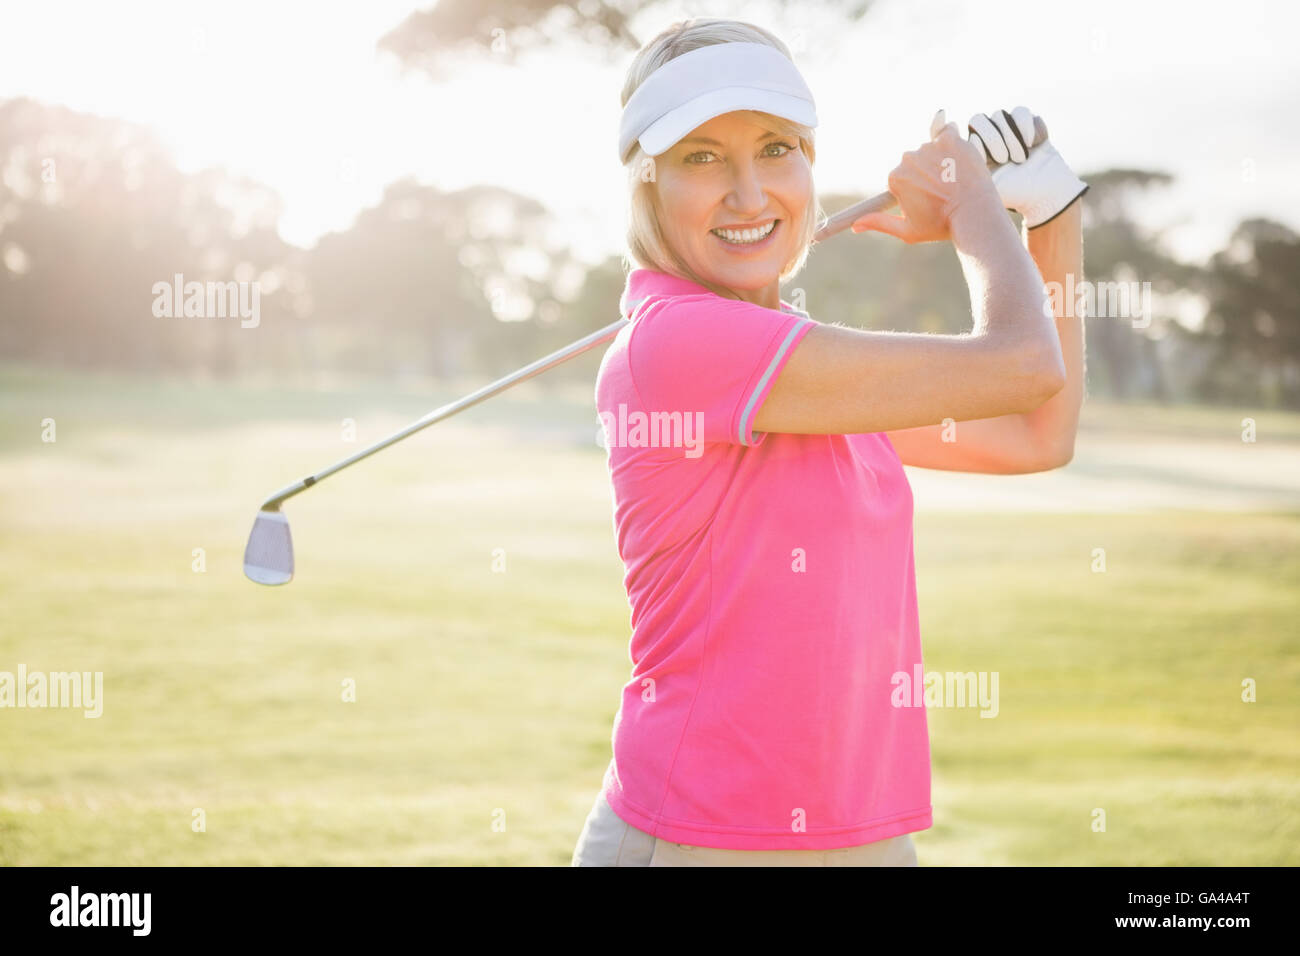 Portrait de femme golfeur smiling Banque D'Images